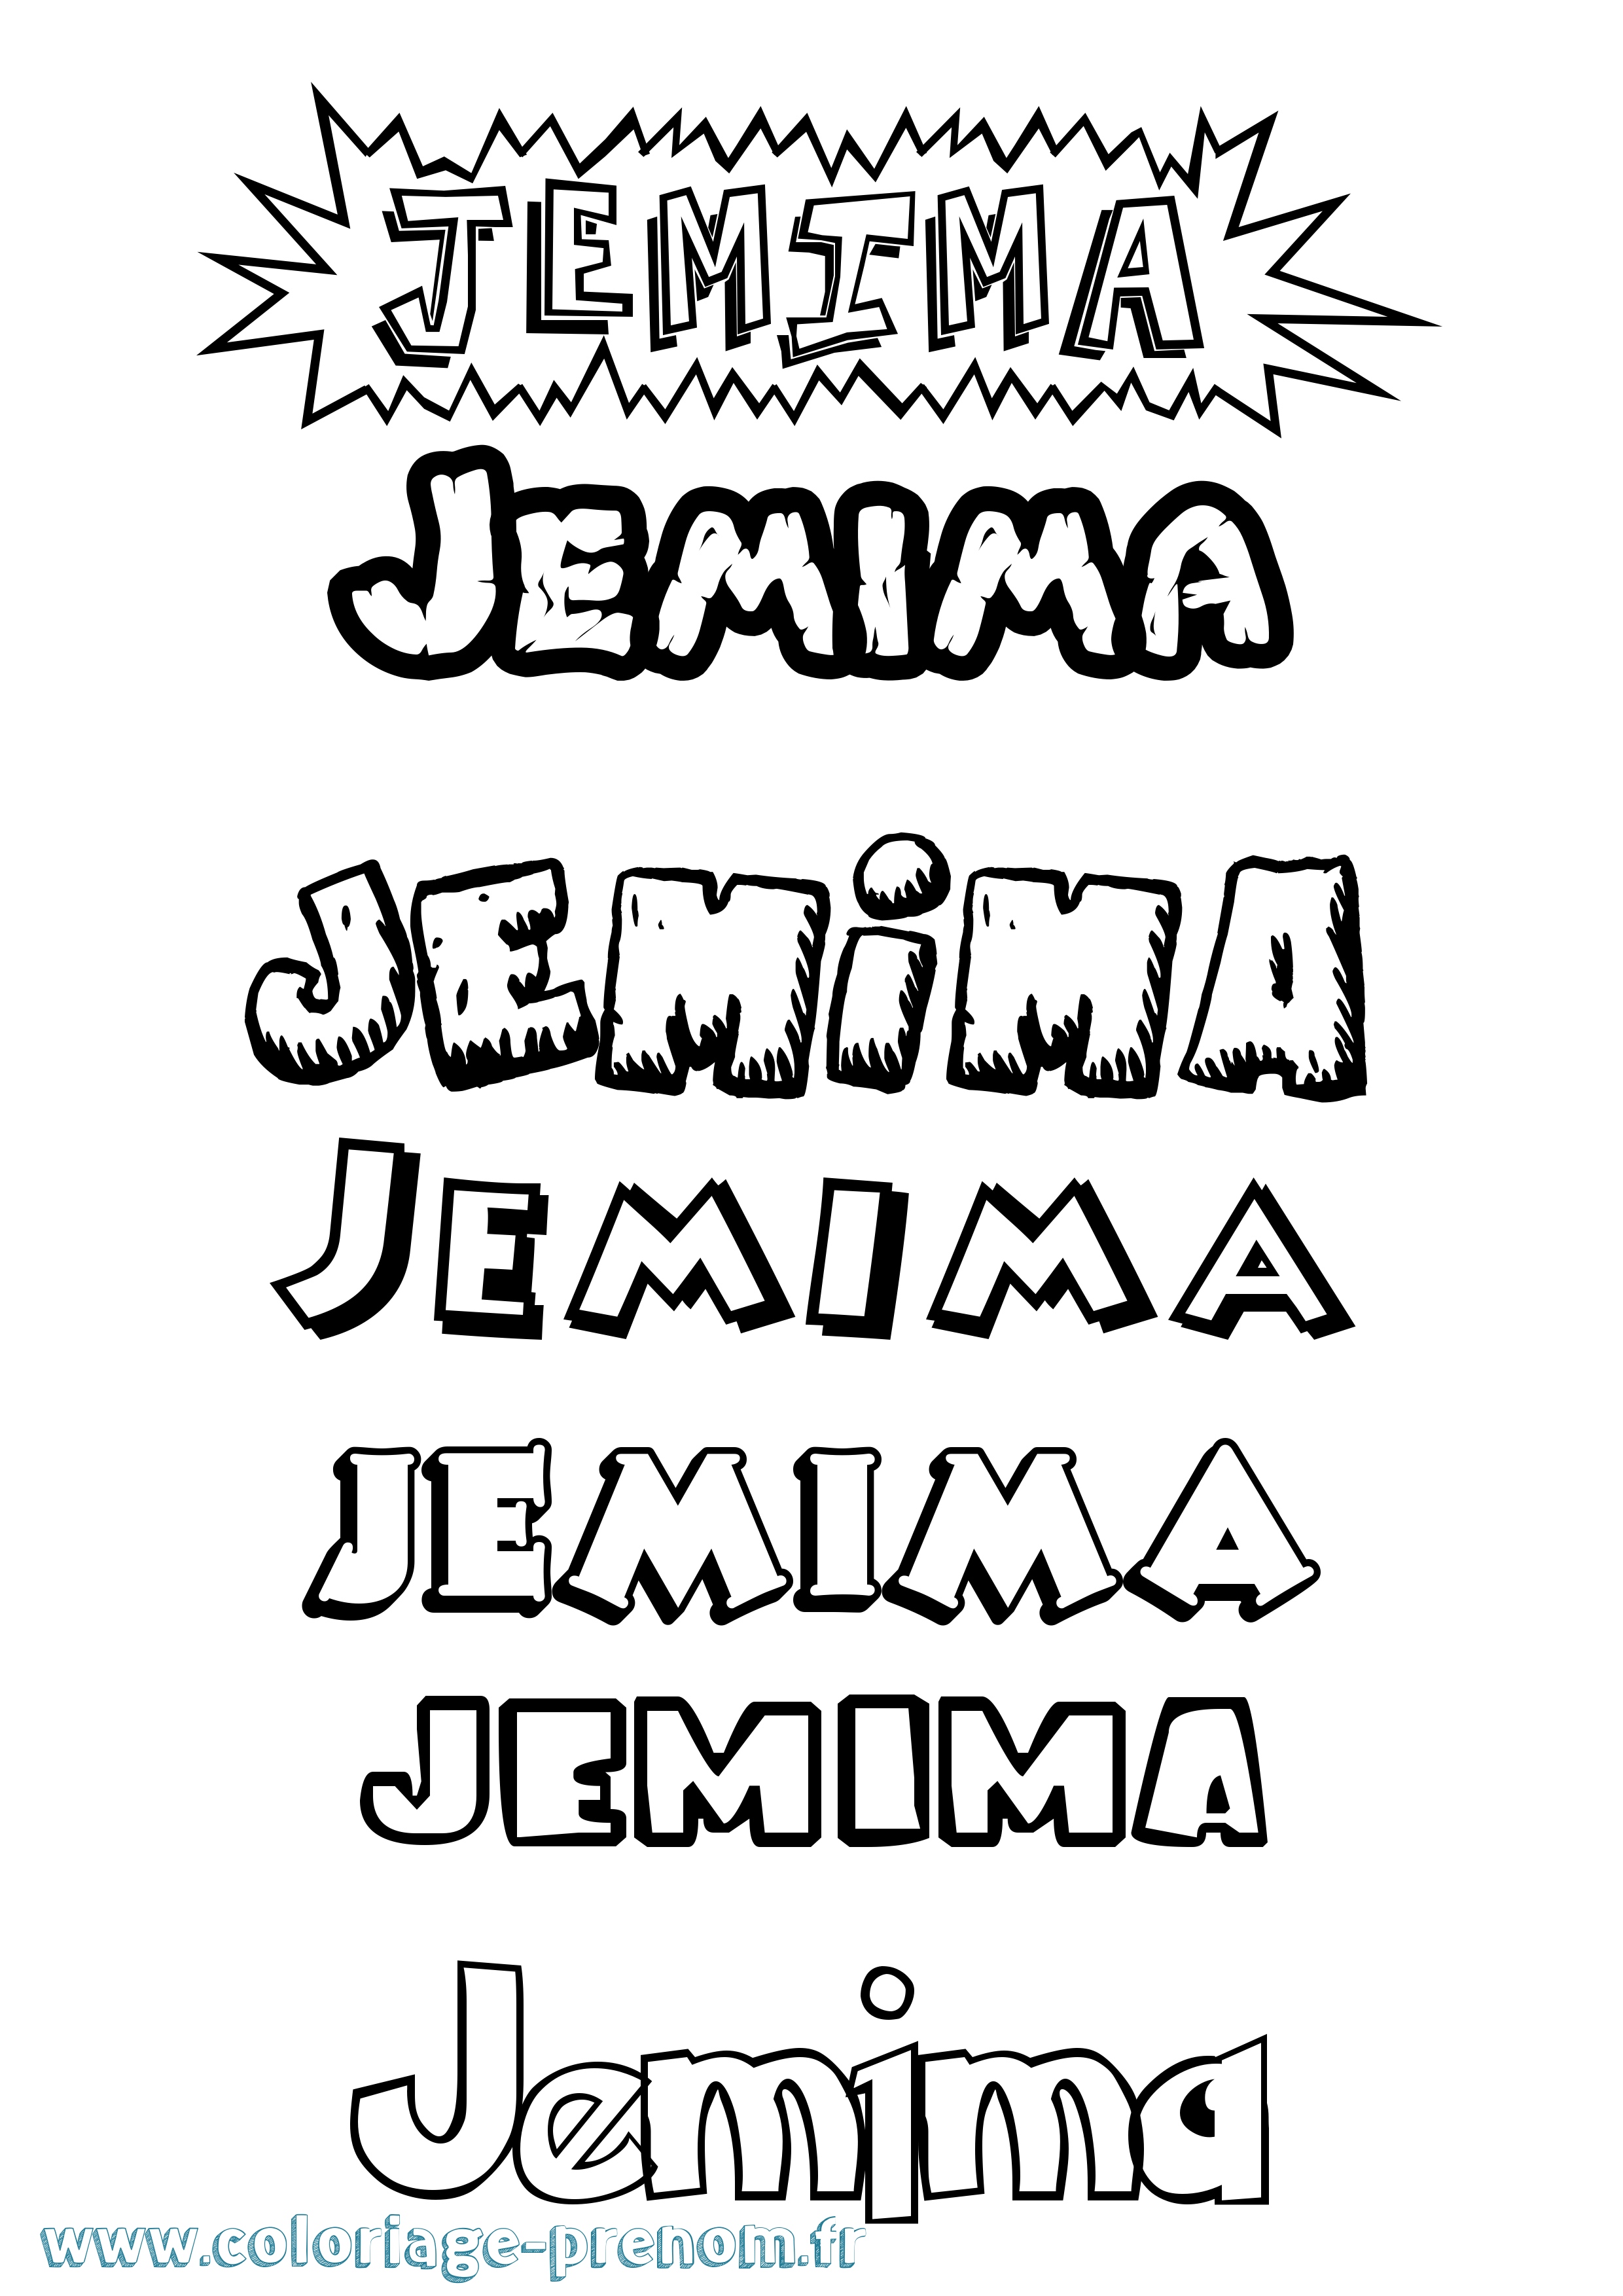 Coloriage prénom Jemima Dessin Animé